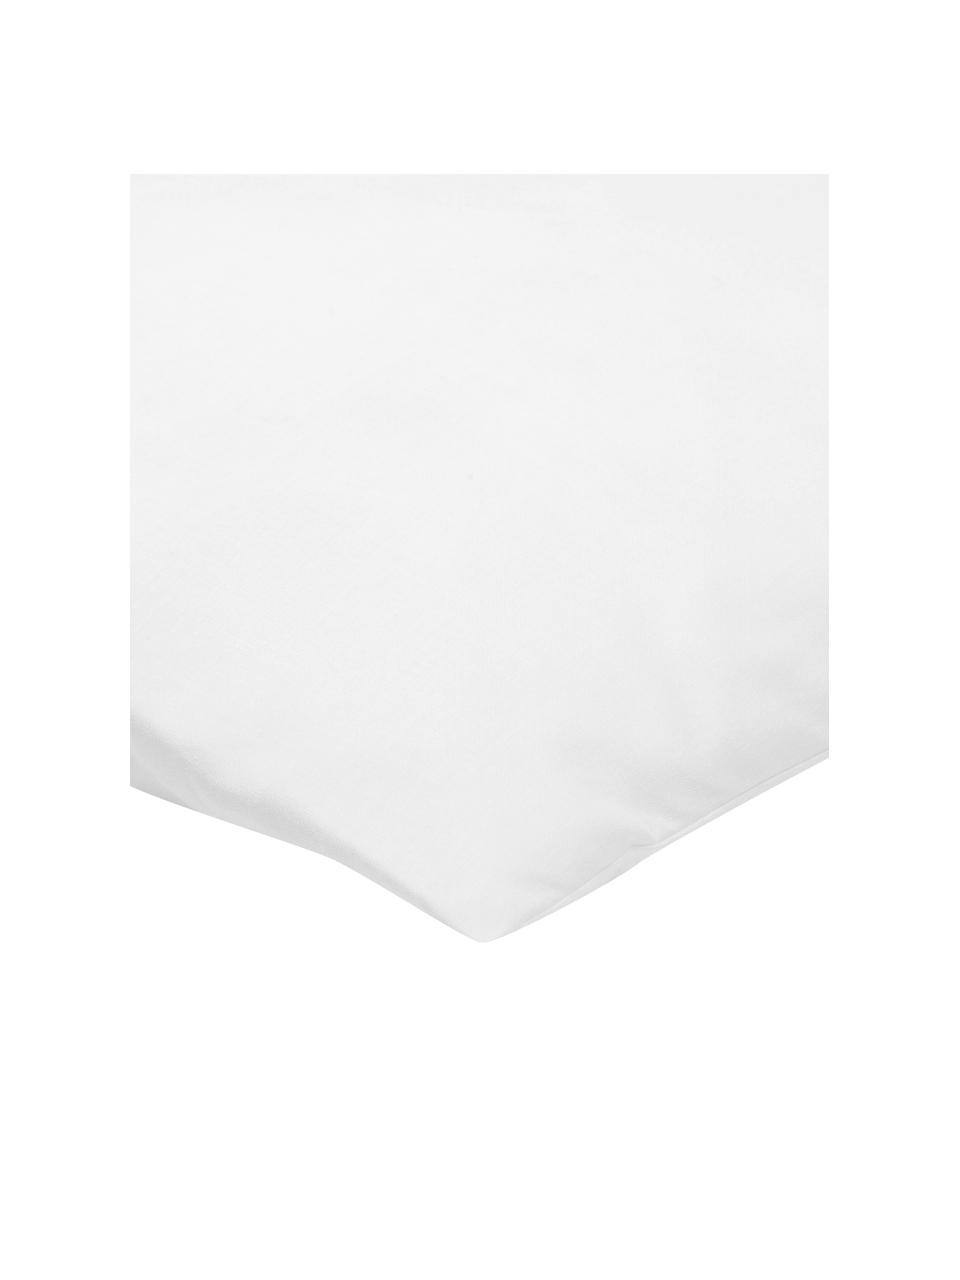 Kissen-Inlett Sia, 40x40, Microfaser-Füllung, Hülle: 100% Baumwolle, Weiß, B 40 x L 40 cm